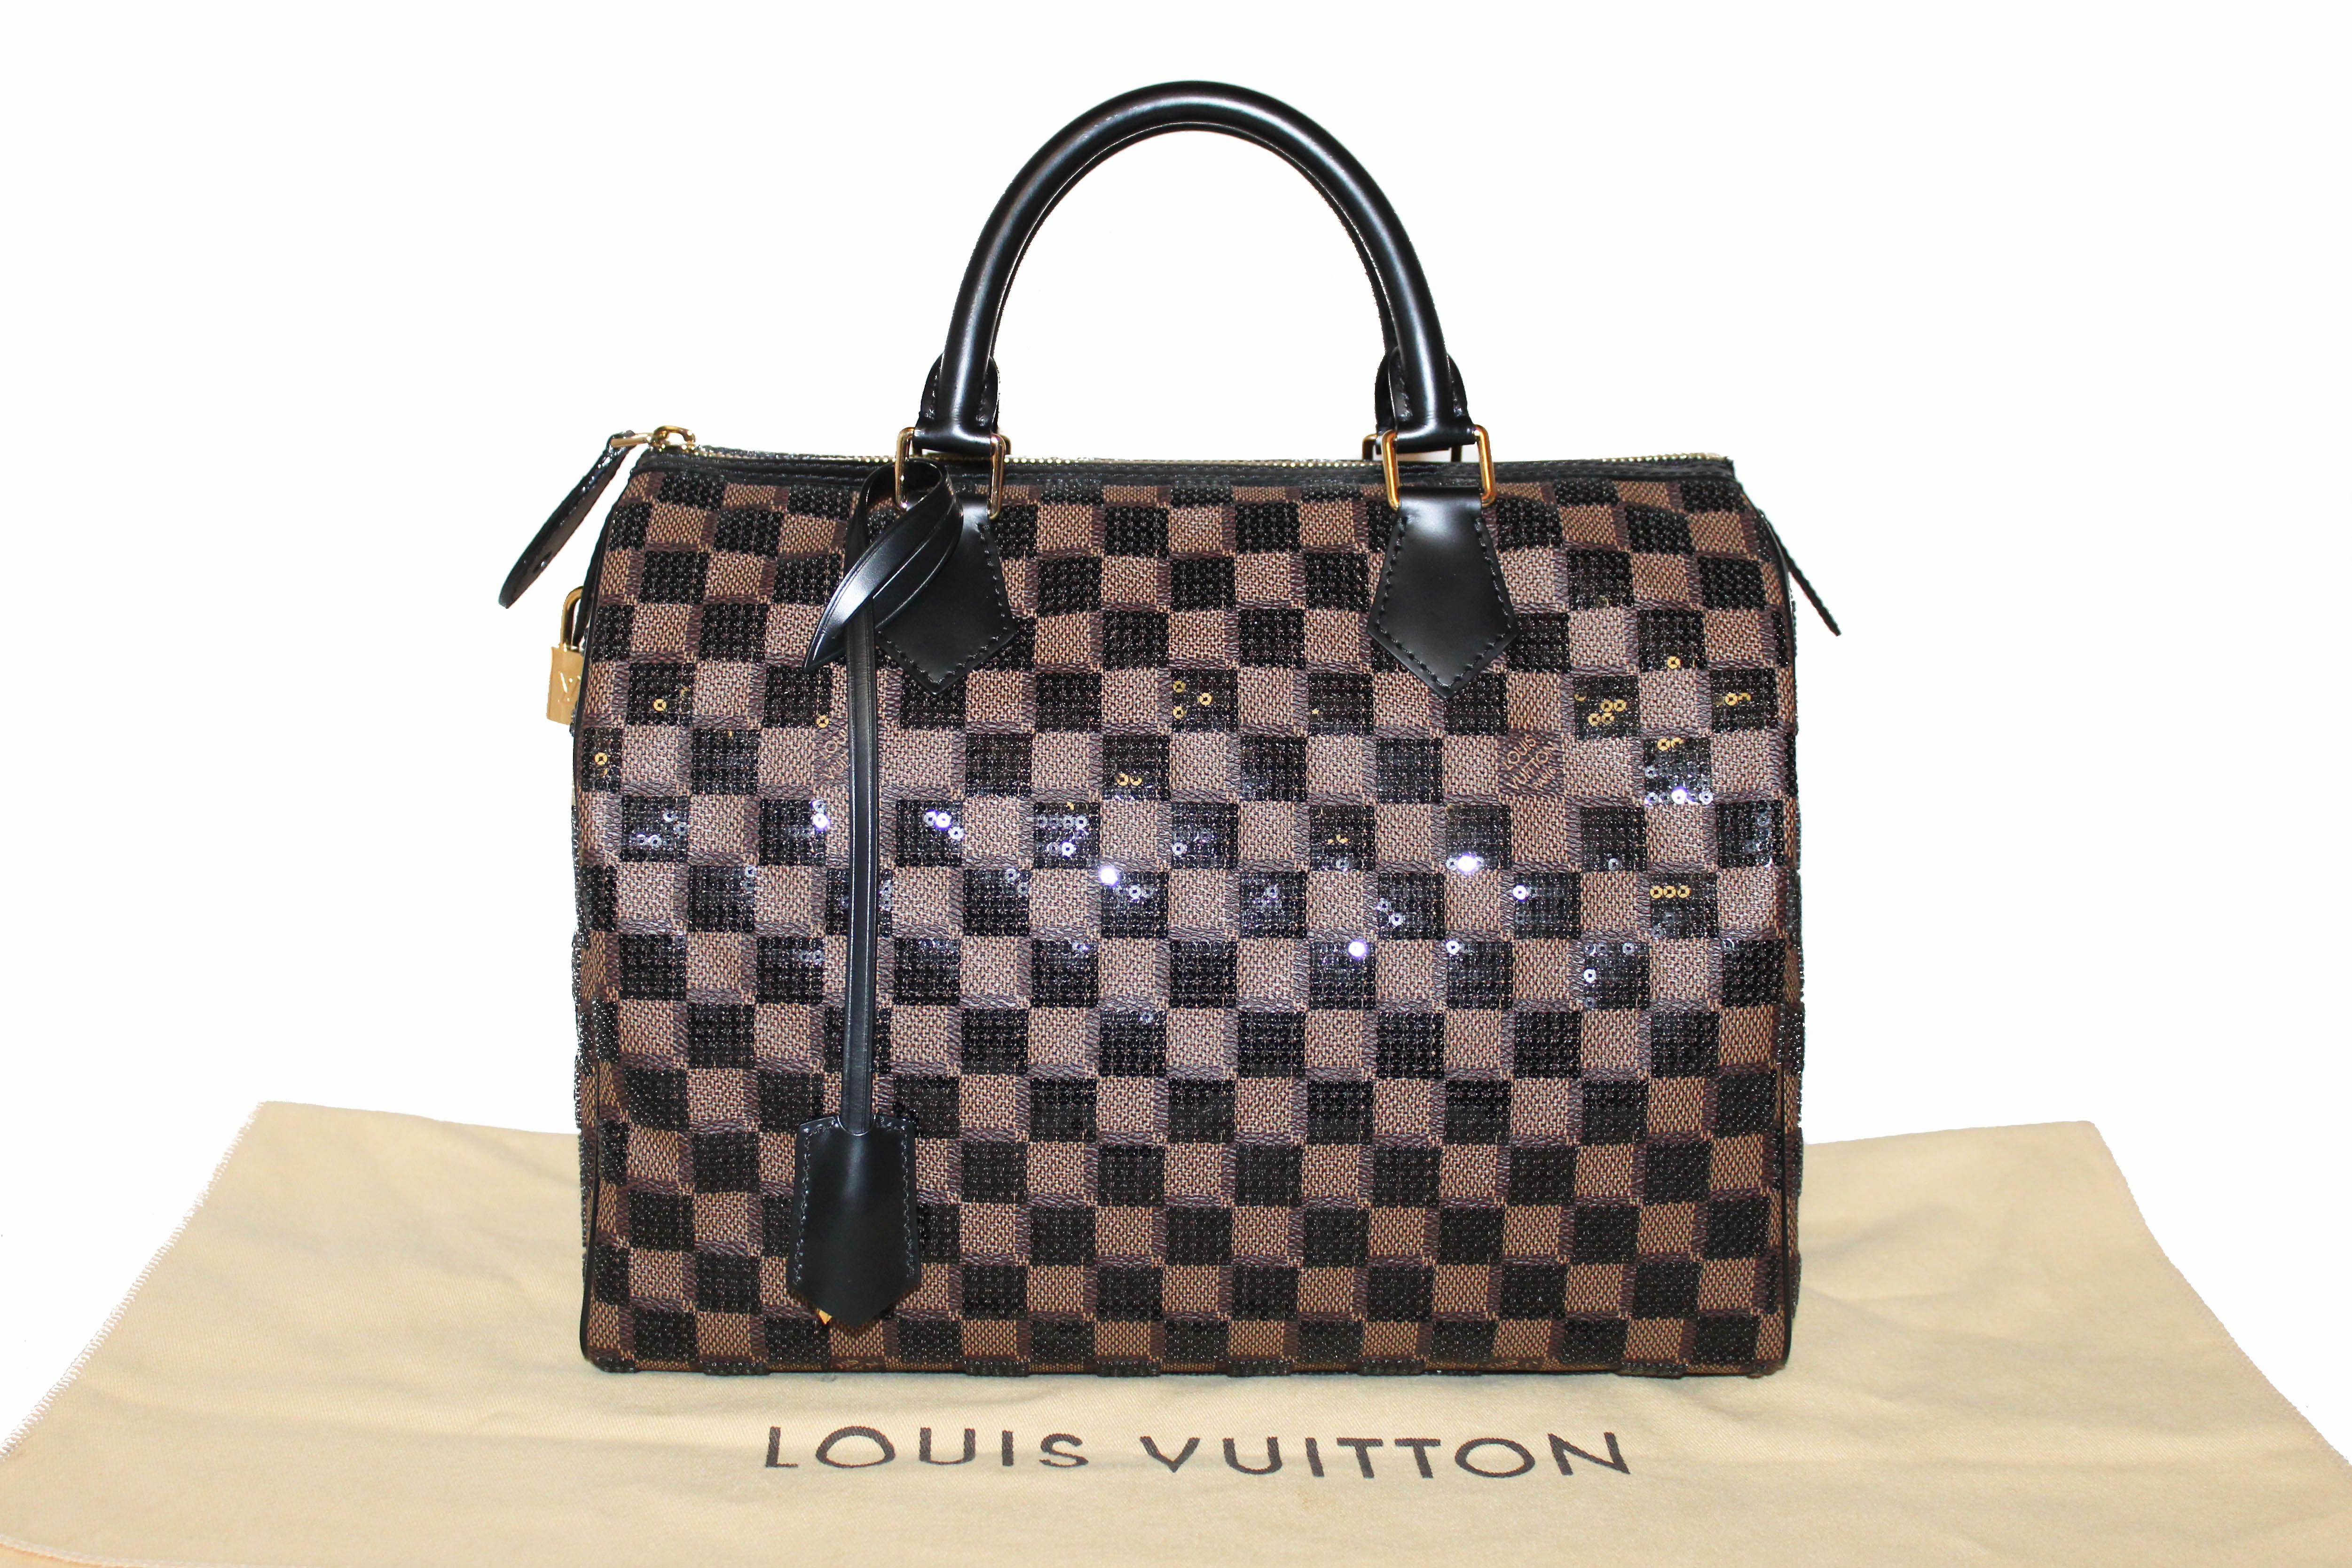 Louis Vuitton Limited Edition Speedy 30 Damier Paillettes Noir